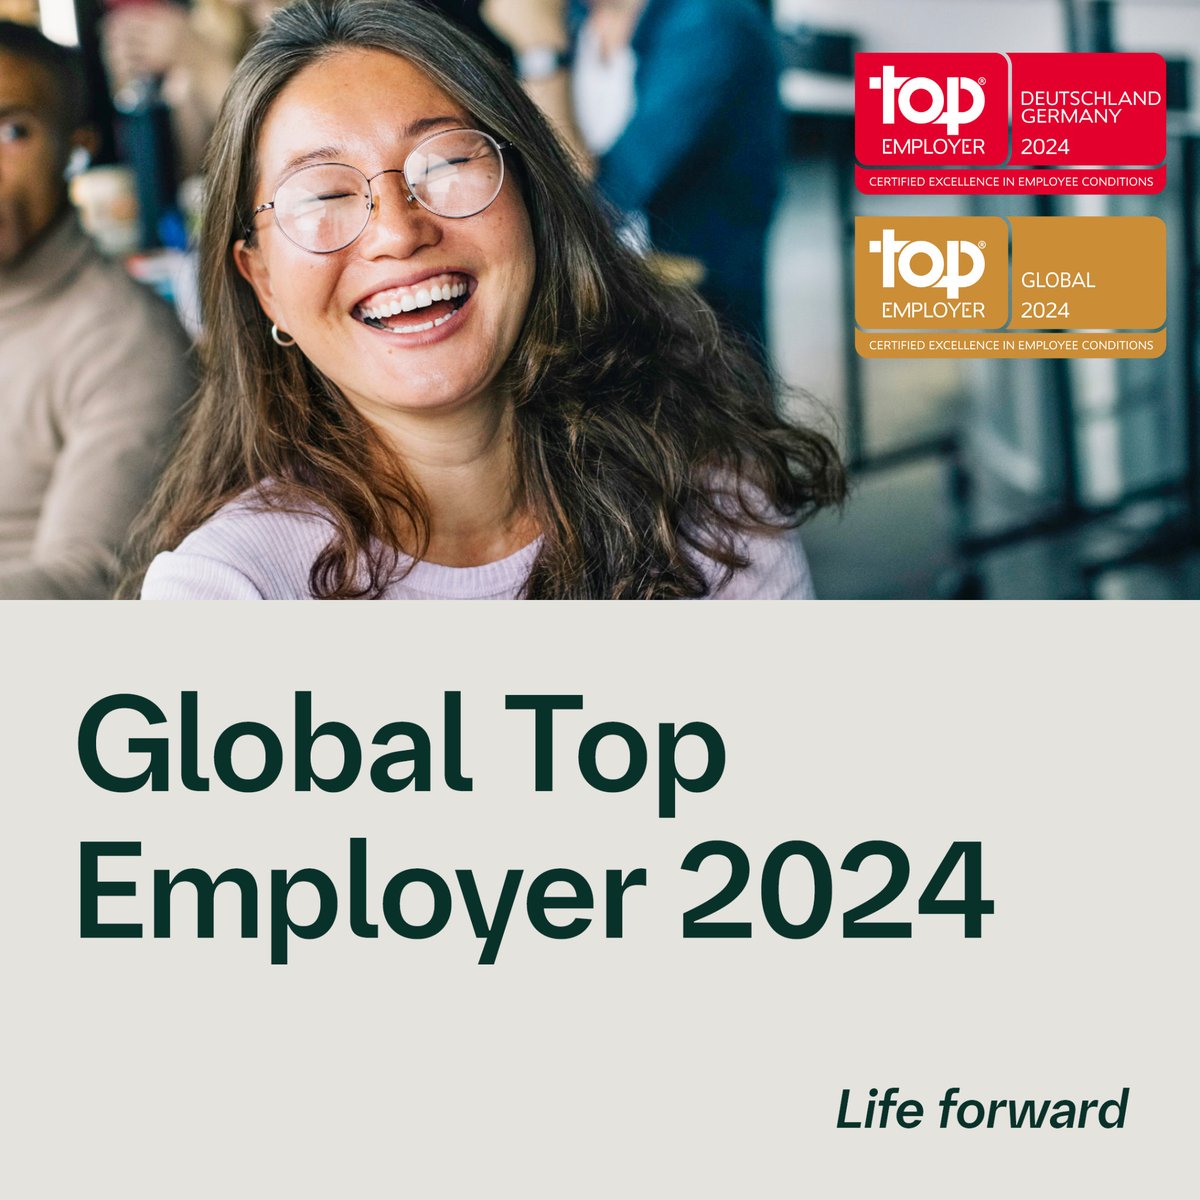 #PRESSE: Zum vierten Mal in Folge wurden wir als Global #TopEmployers2024 ausgezeichnet. Dabei wurde unsere Mitarbeiterentwicklung dank virtueller Lernplattform & KI-Unterstützung hervorgehoben. Mehr über unsere Auszeichnung 👉bit.ly/3HoKVTH